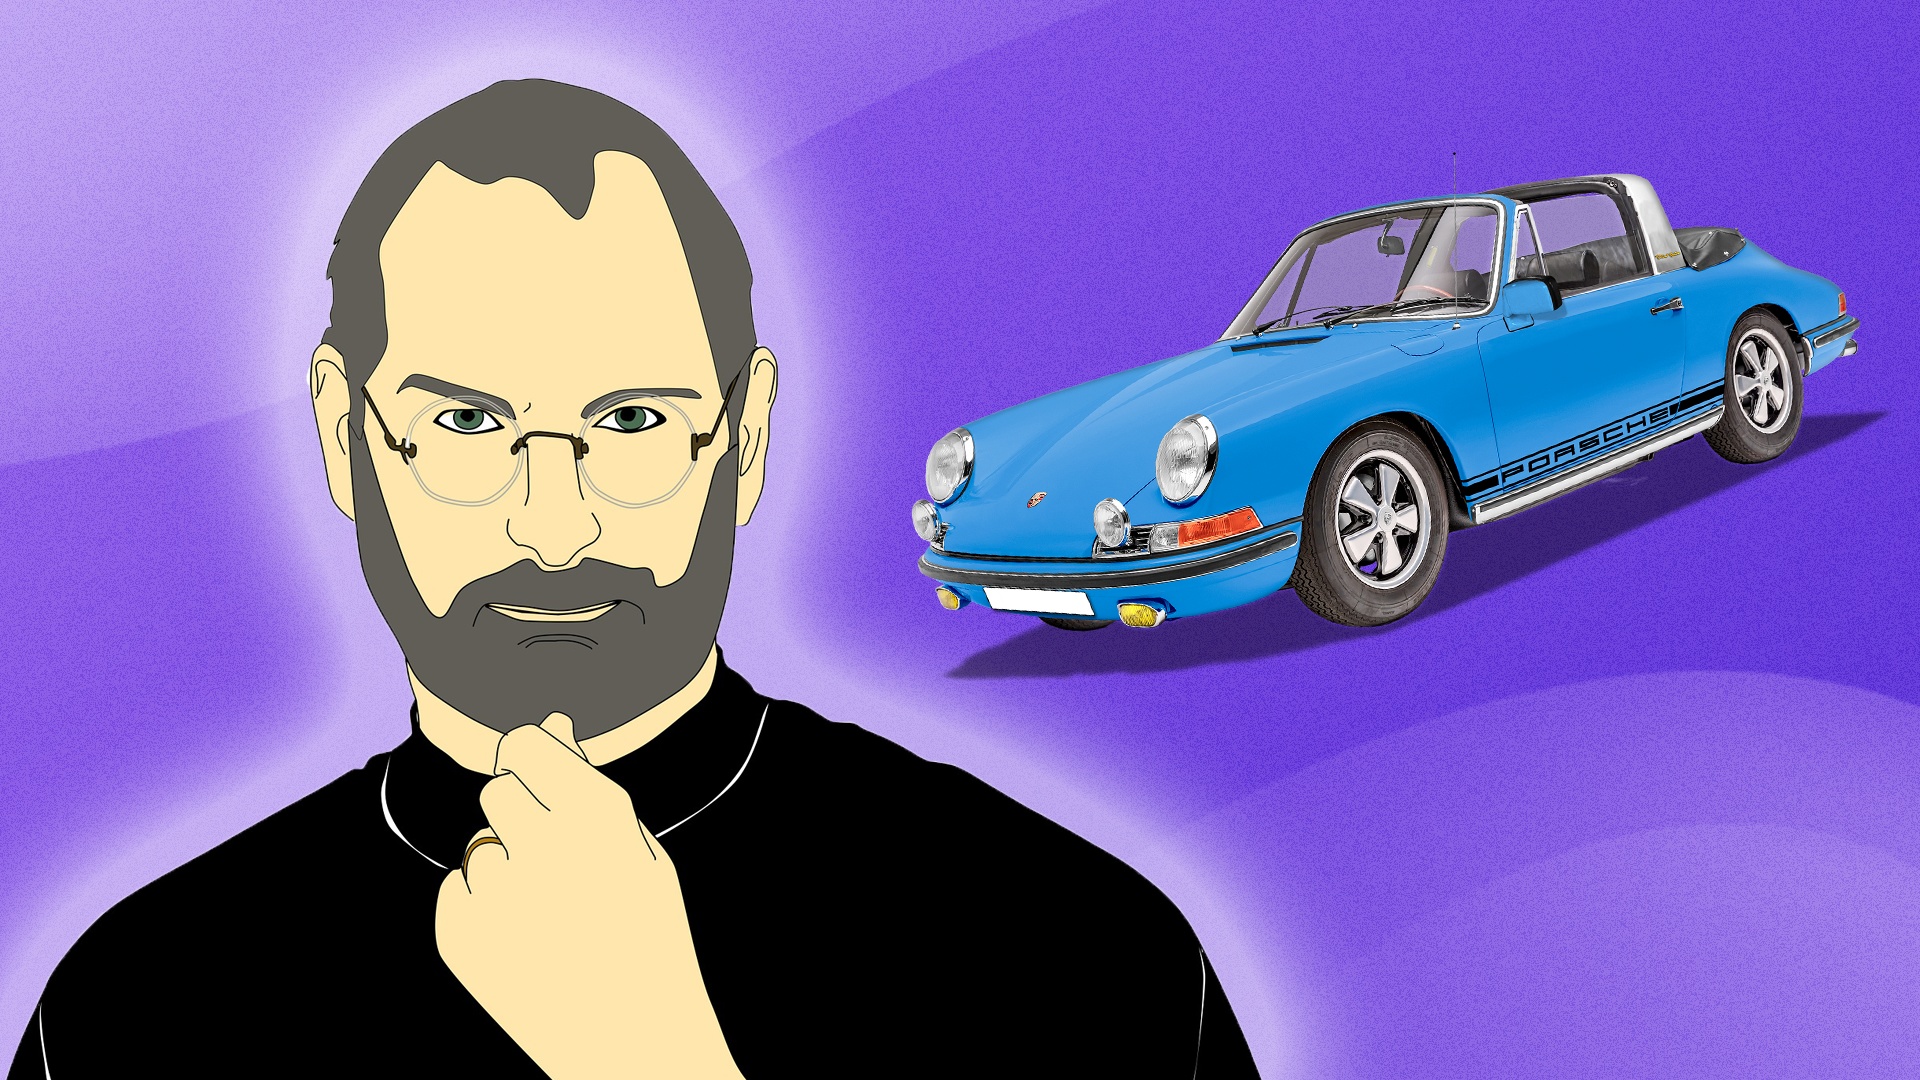 #Trick von Apple-Legende Steve Jobs: Verstecke deinen Porsche, um mehr Geld zu bekommen